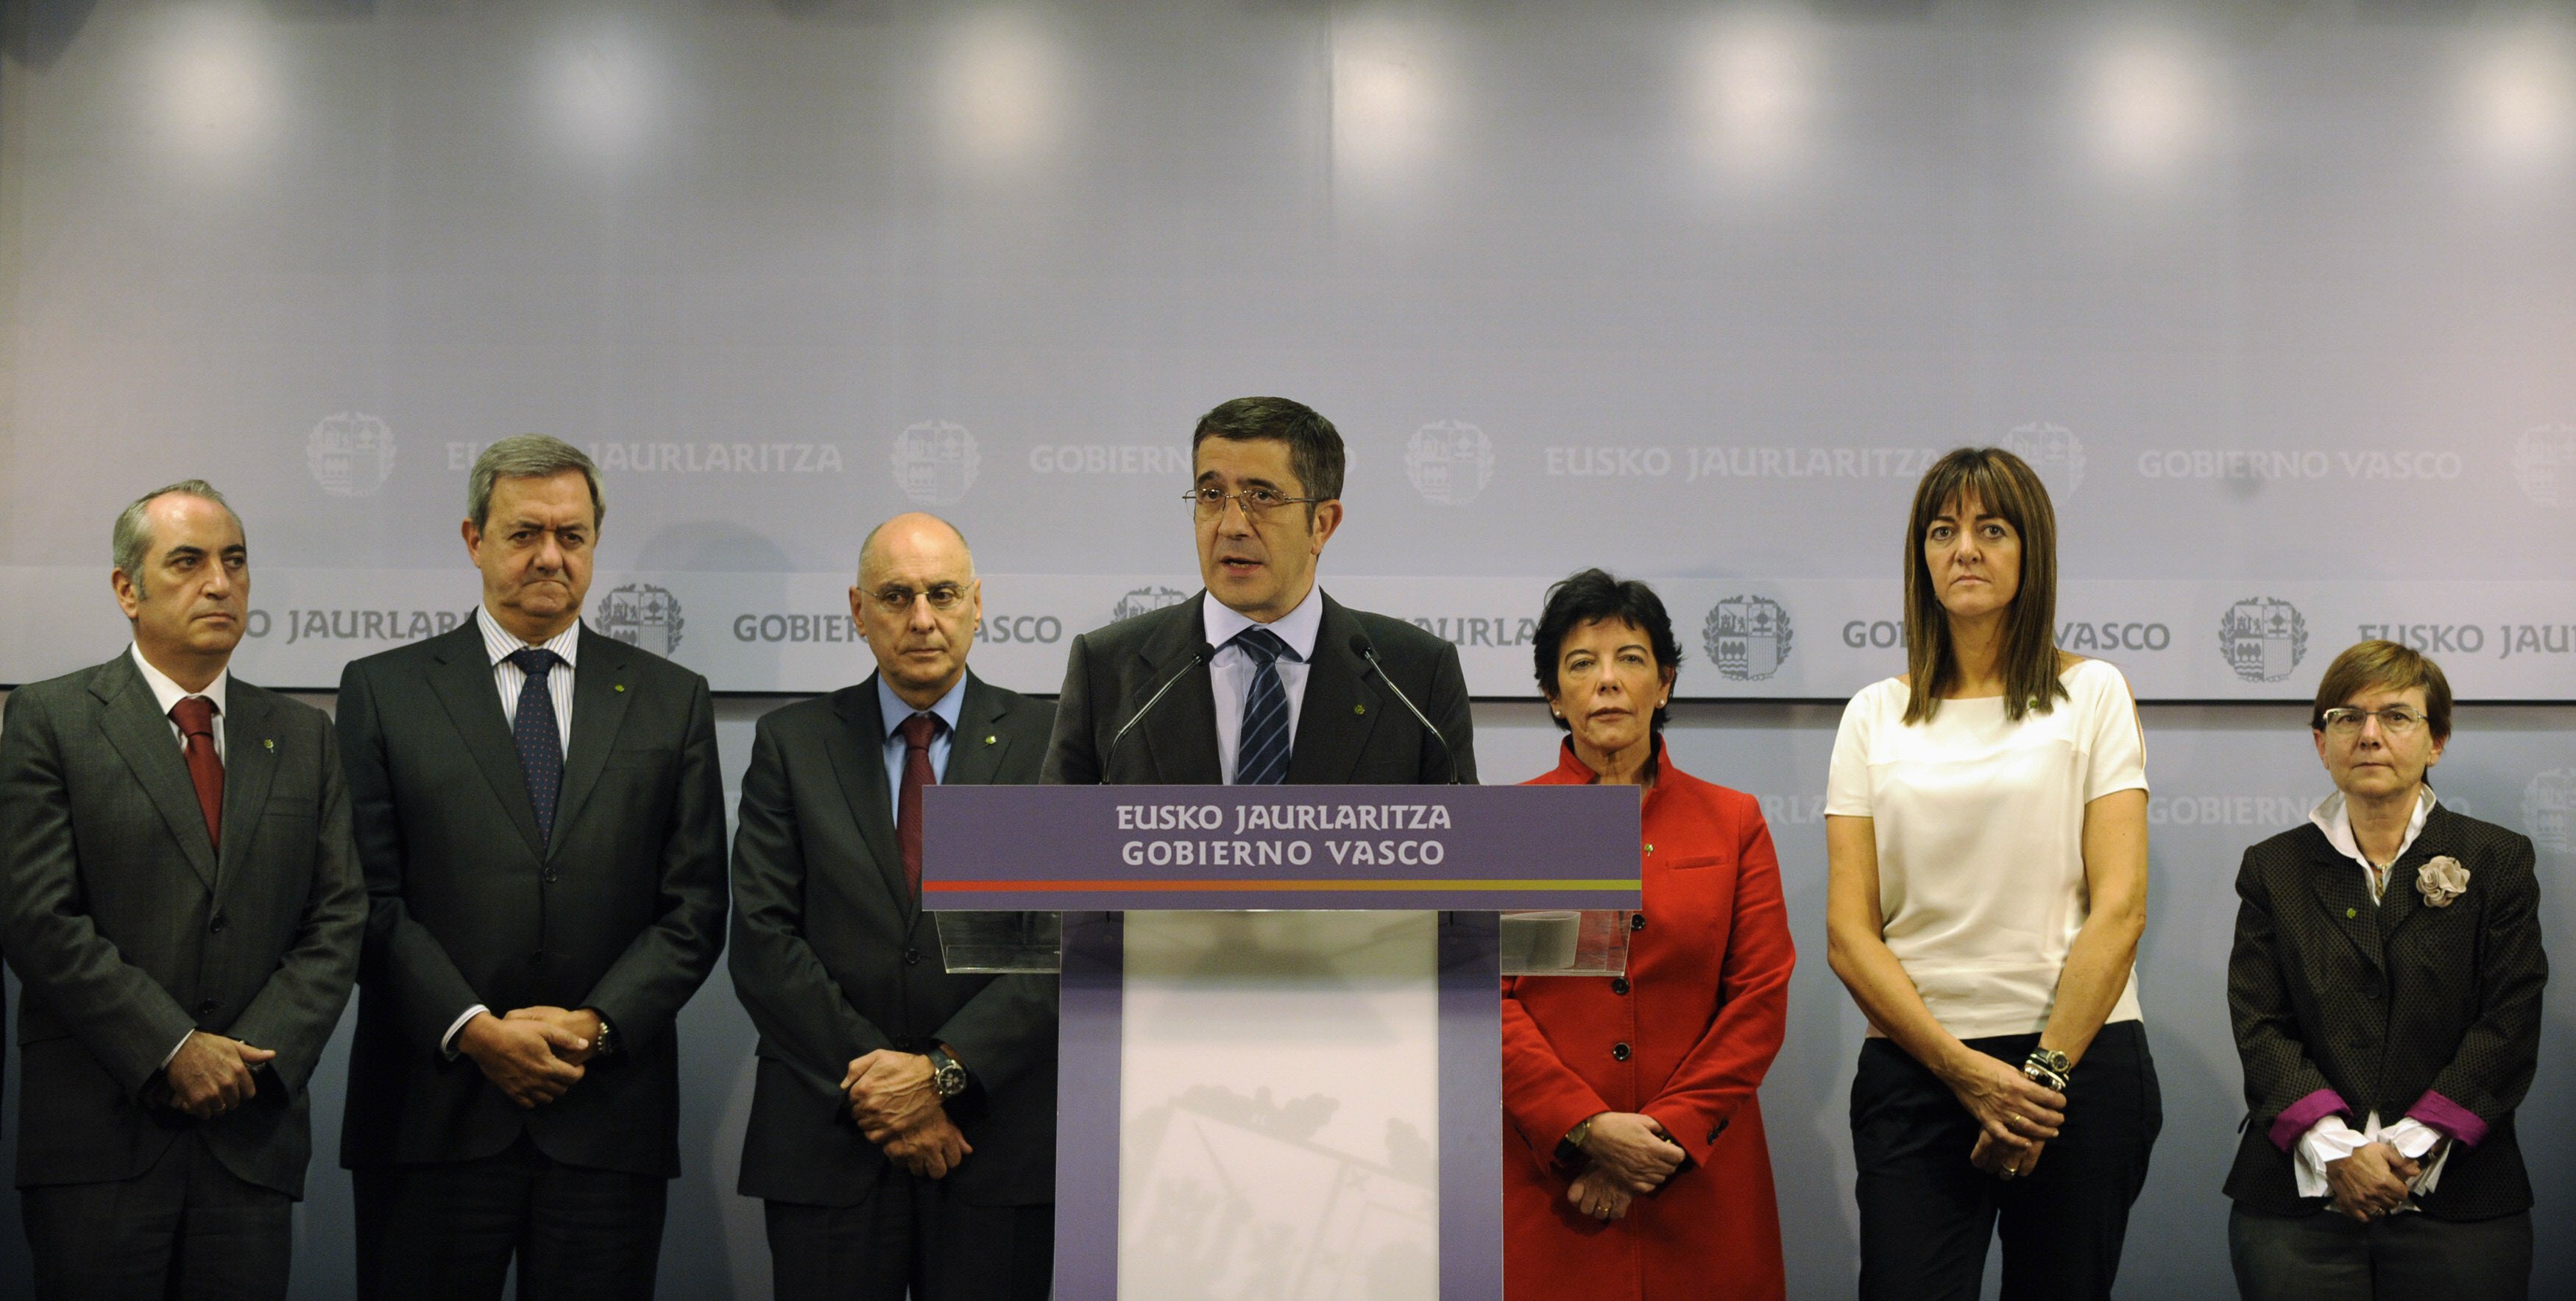 El lehendakari convoca a todos los partidos, incluido Bildu, y a los expresidentes vascos